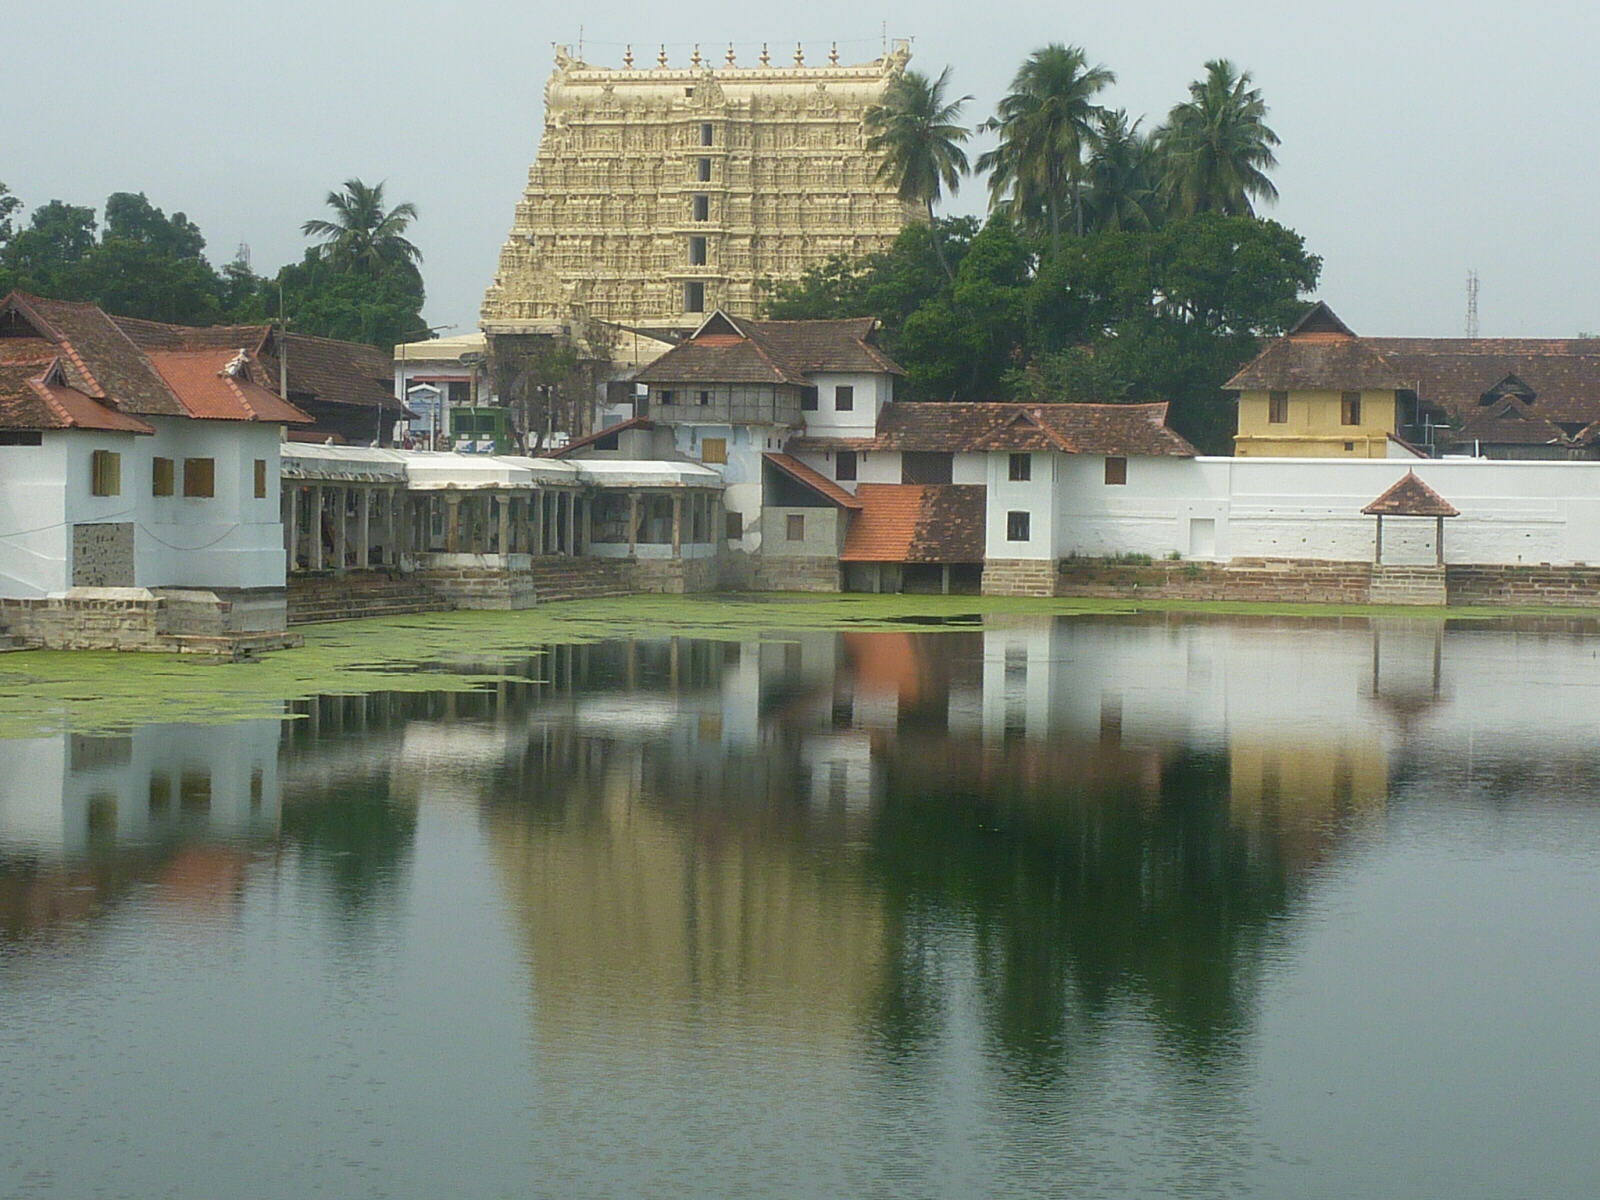 Padmanabhaswamy temple in Trivandrum, Kerala, India